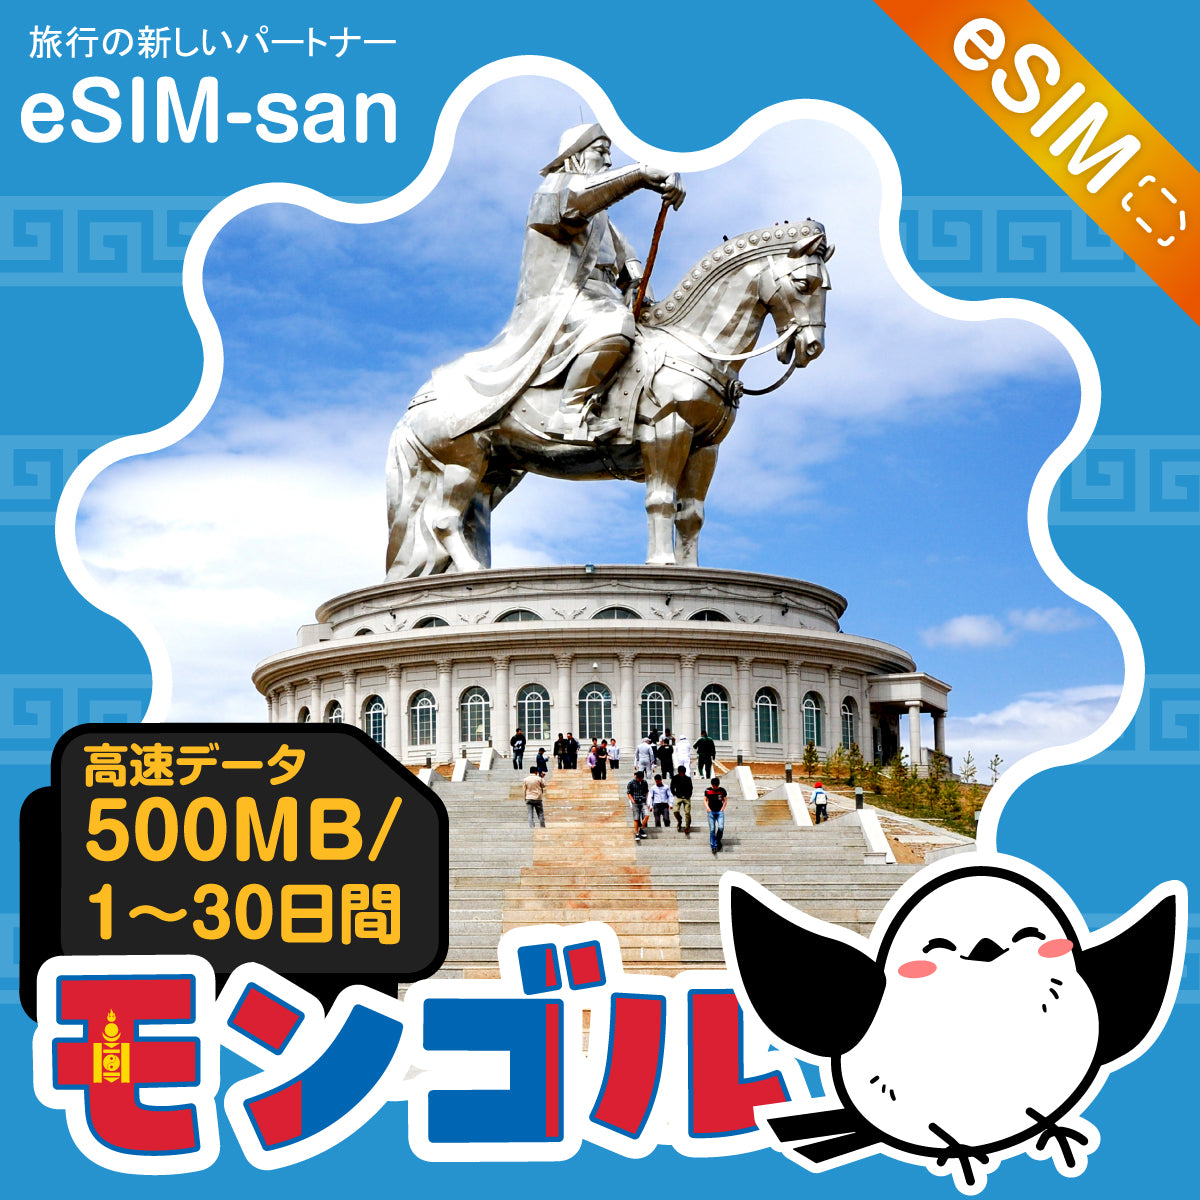 モンゴルeSIMの500MB/dayプラン画像_eSIM-san